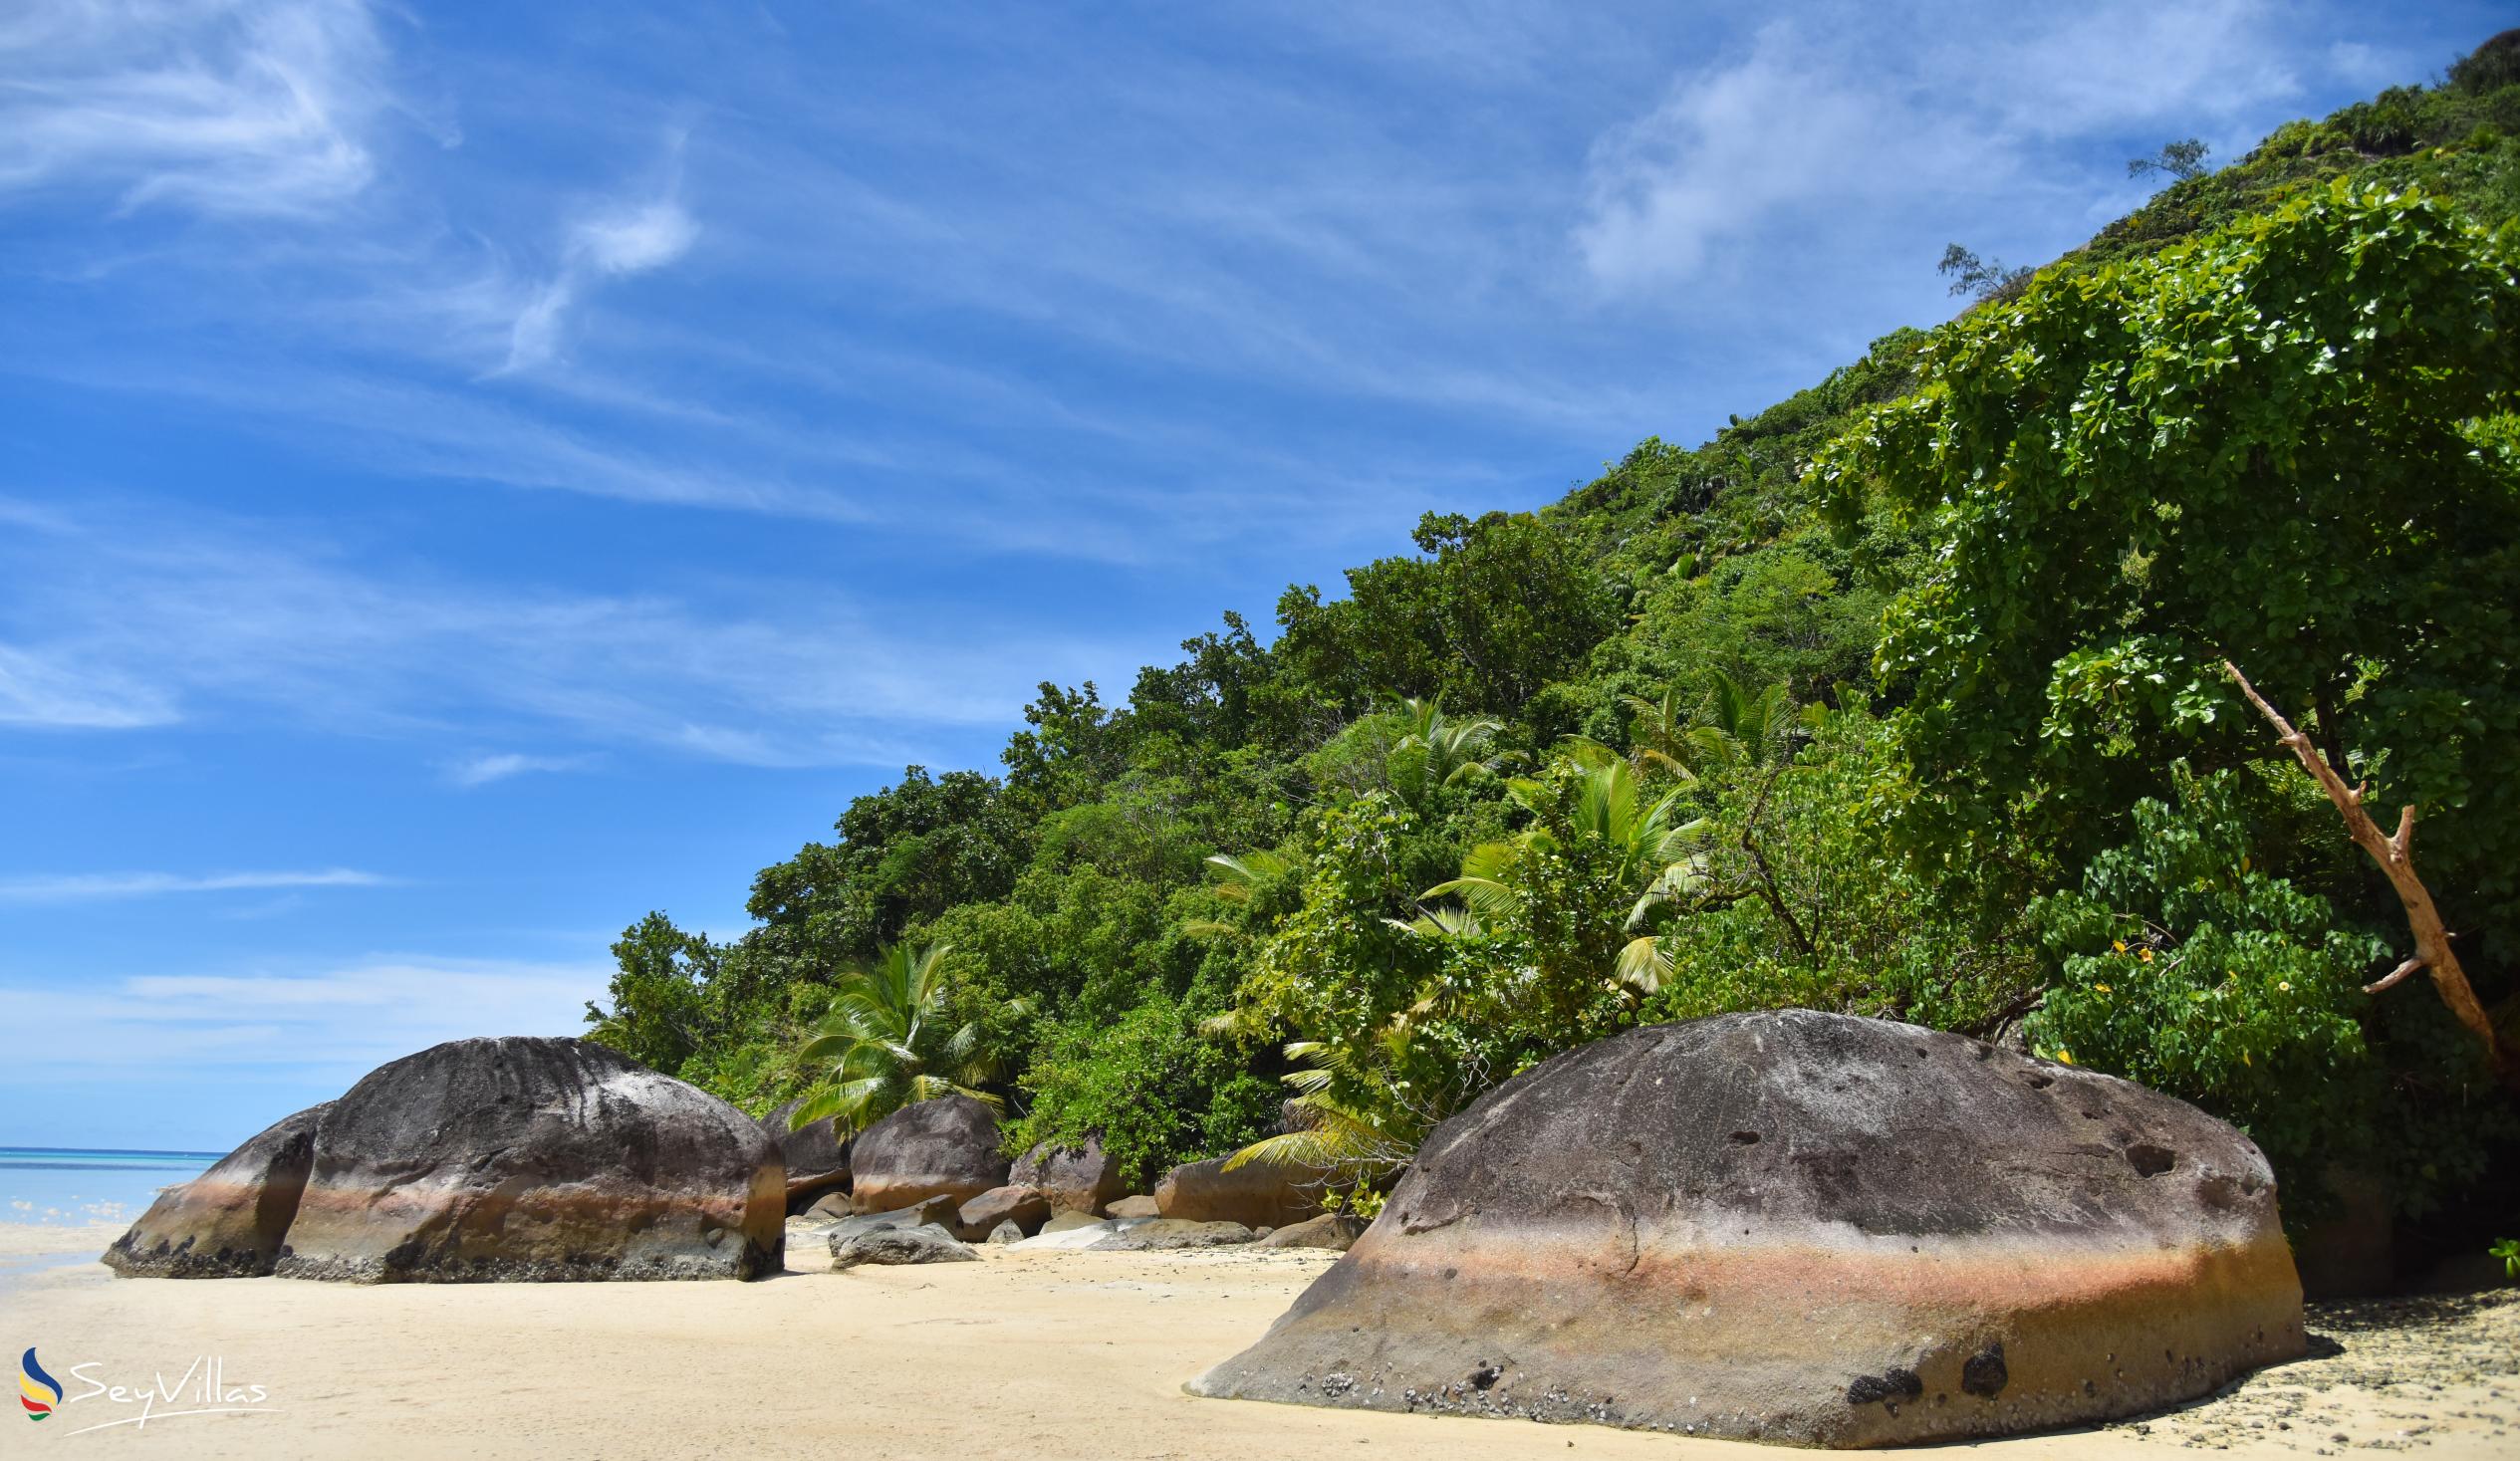 Photo 4: Baie Ternay - Mahé (Seychelles)